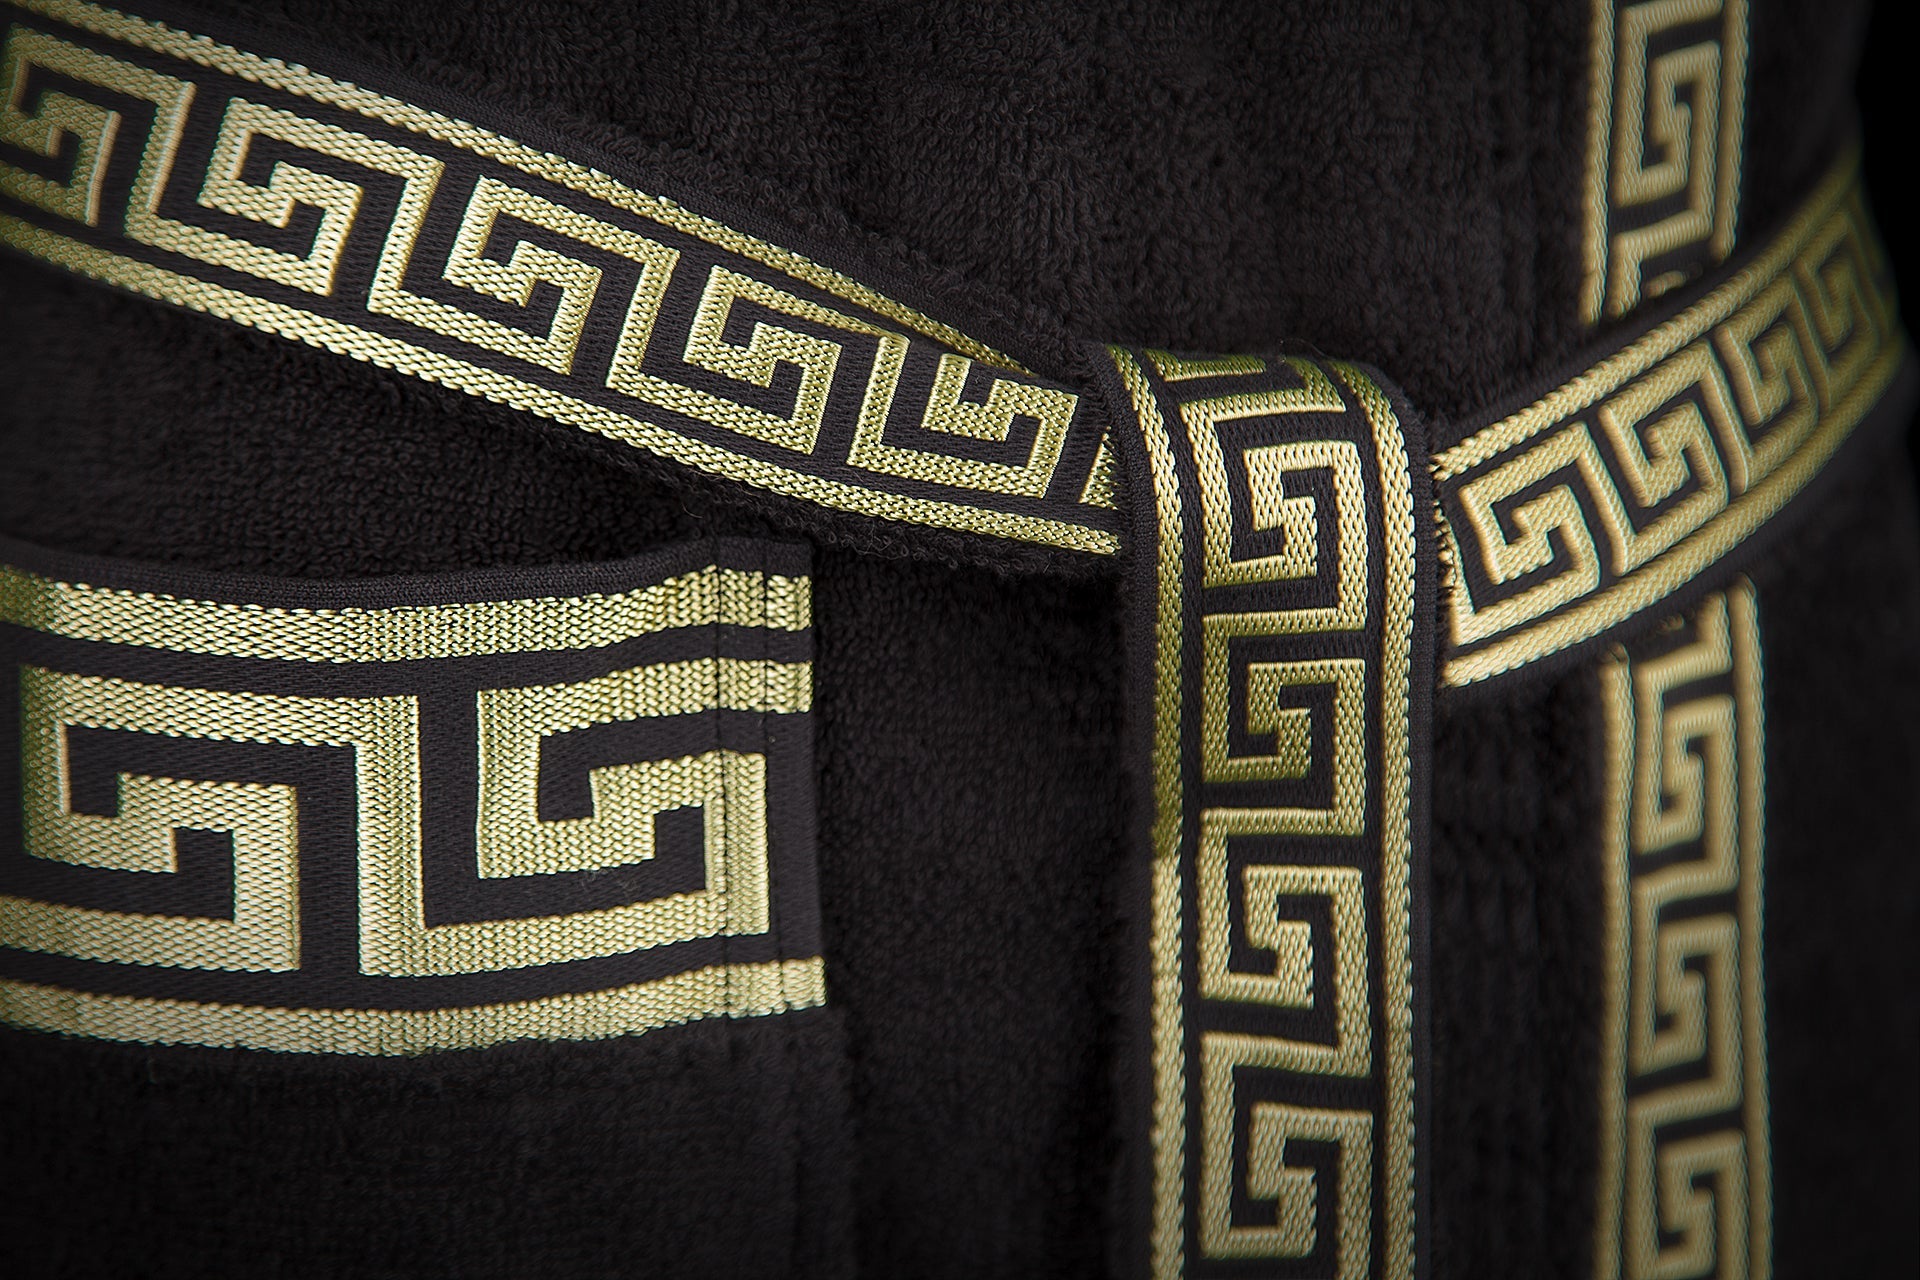 Bademantel Kimono für Damen & Herren - 100% Baumwolle in schwarz gold